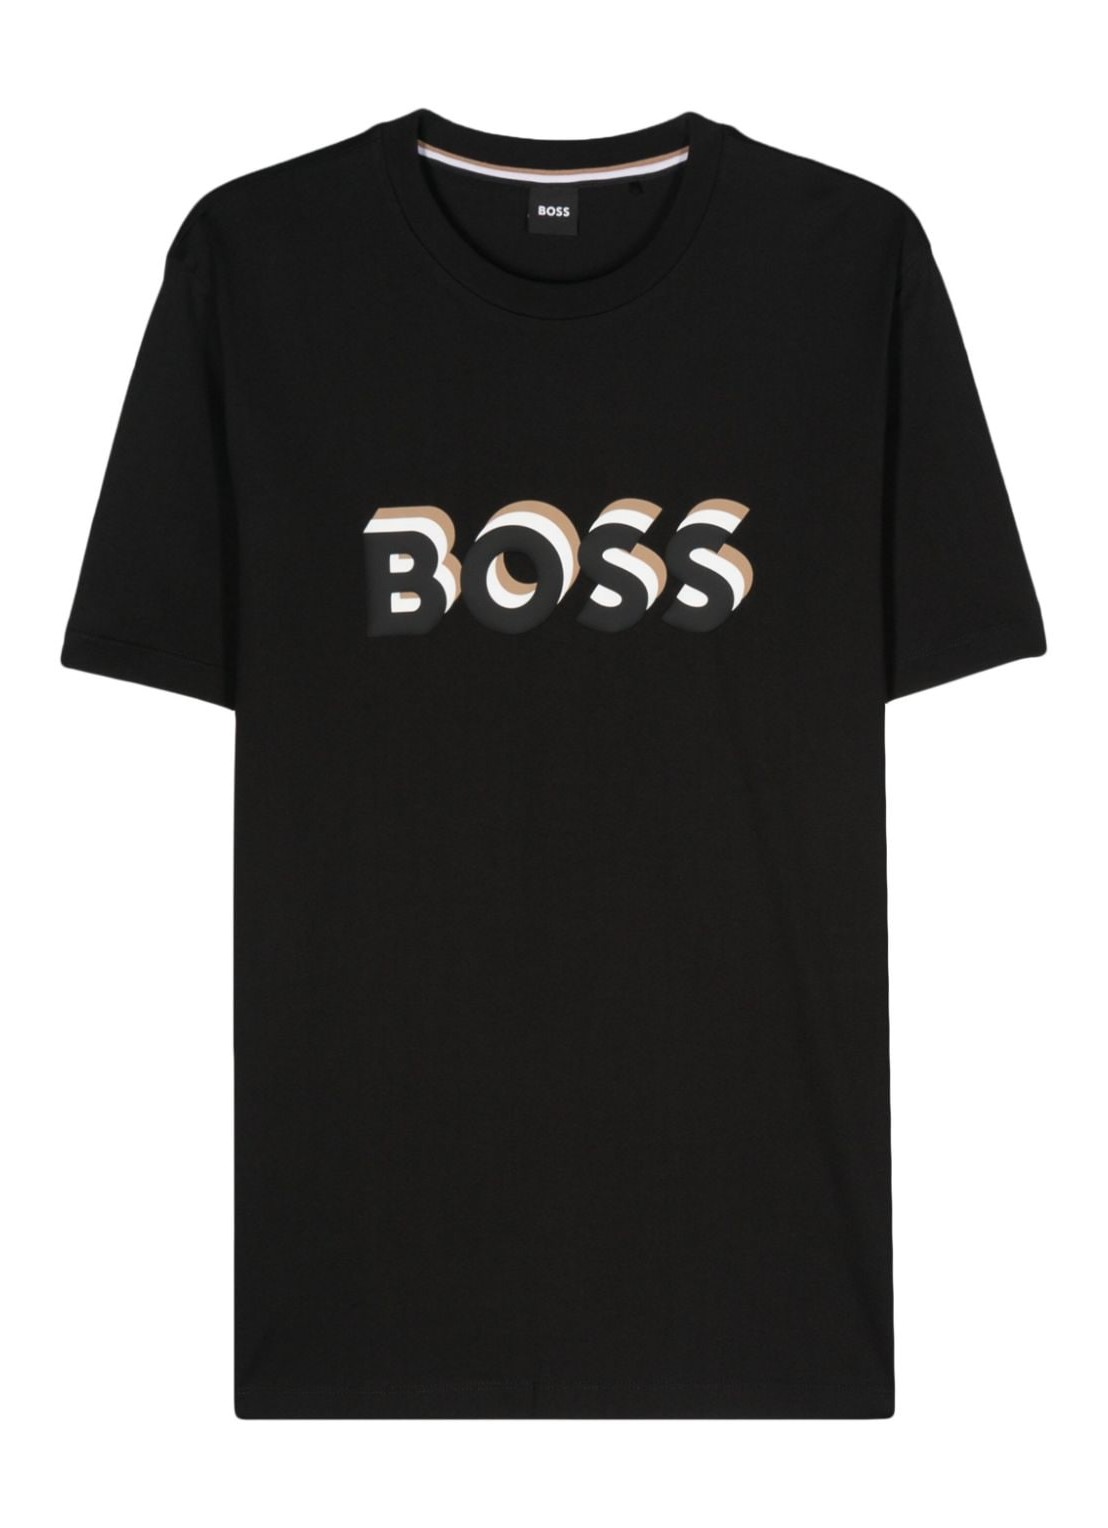 Camiseta boss t-shirt man tiburt 427 50506923 001 talla 3XL
 